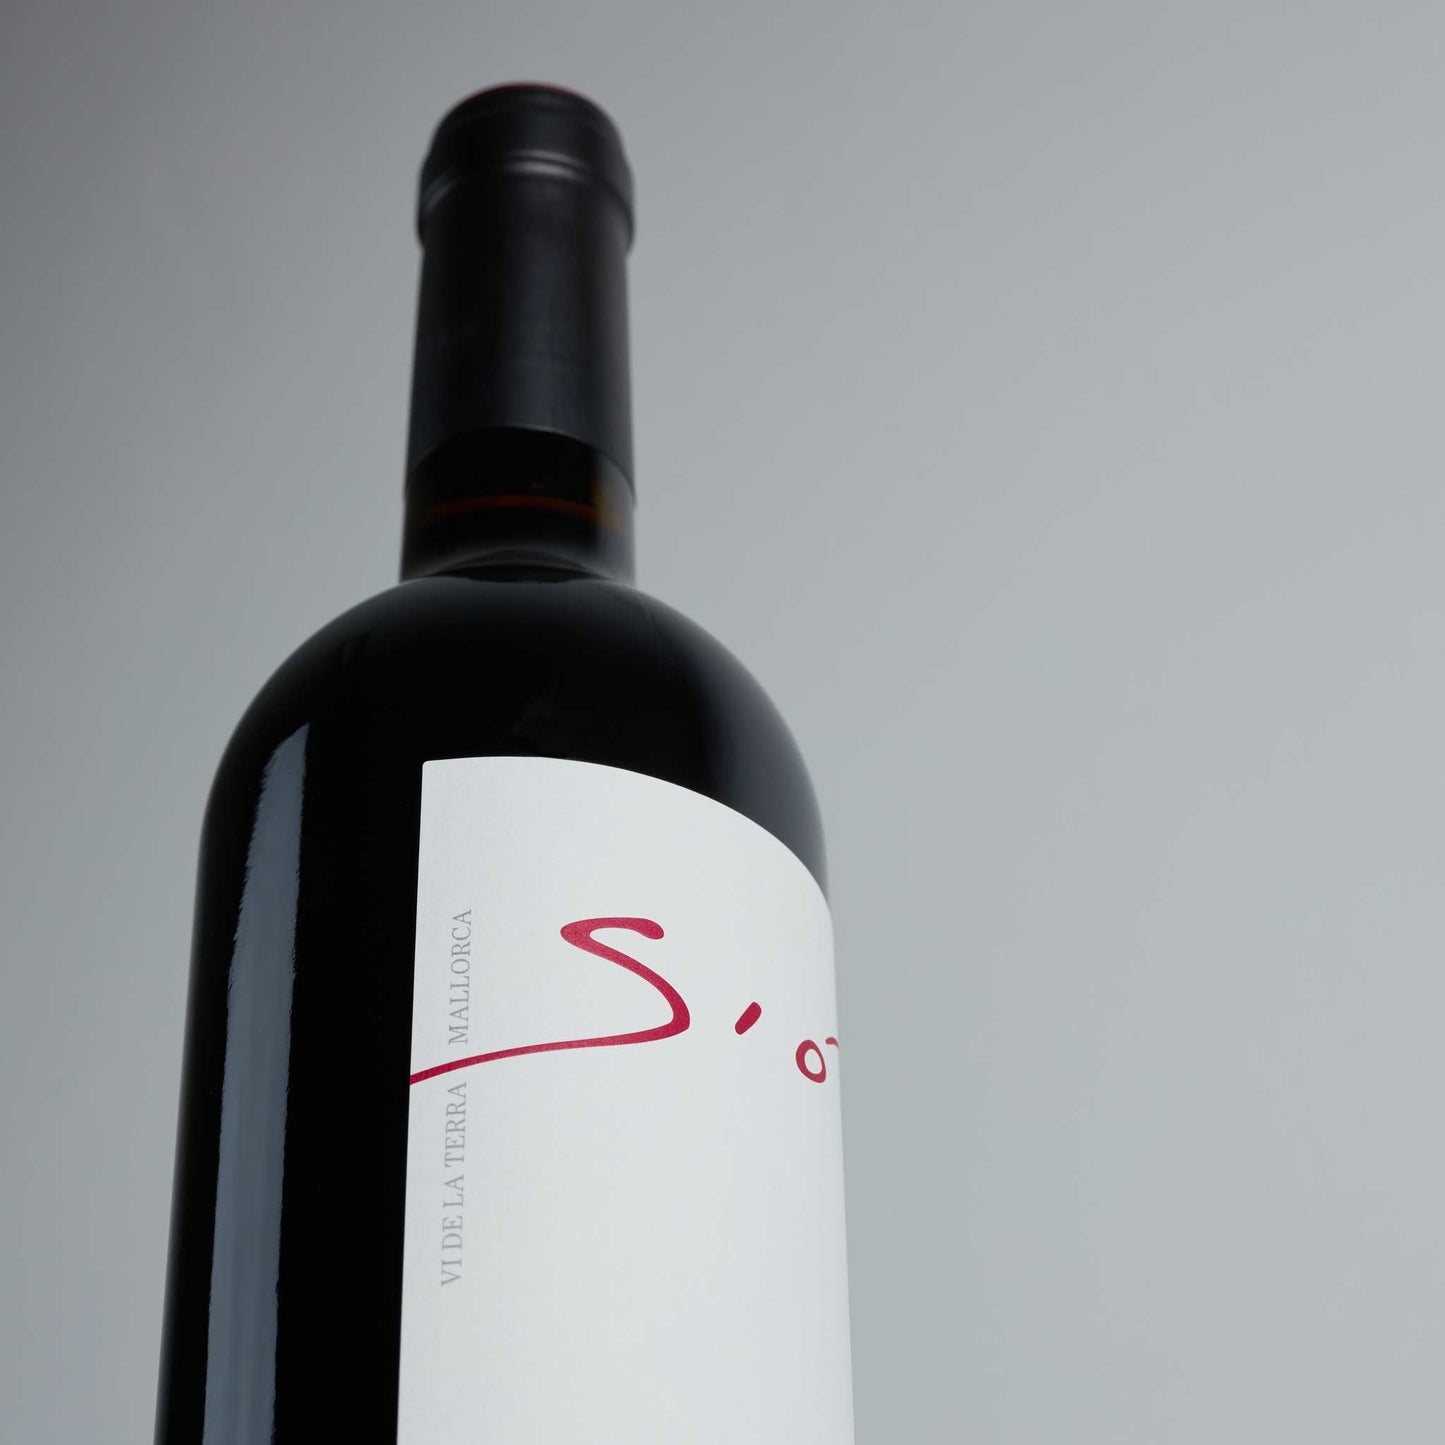 Rotweinflasche stehend weißes Etikett, Aufschrift "Sio", klein daneben: Vide la Terra Mallorca